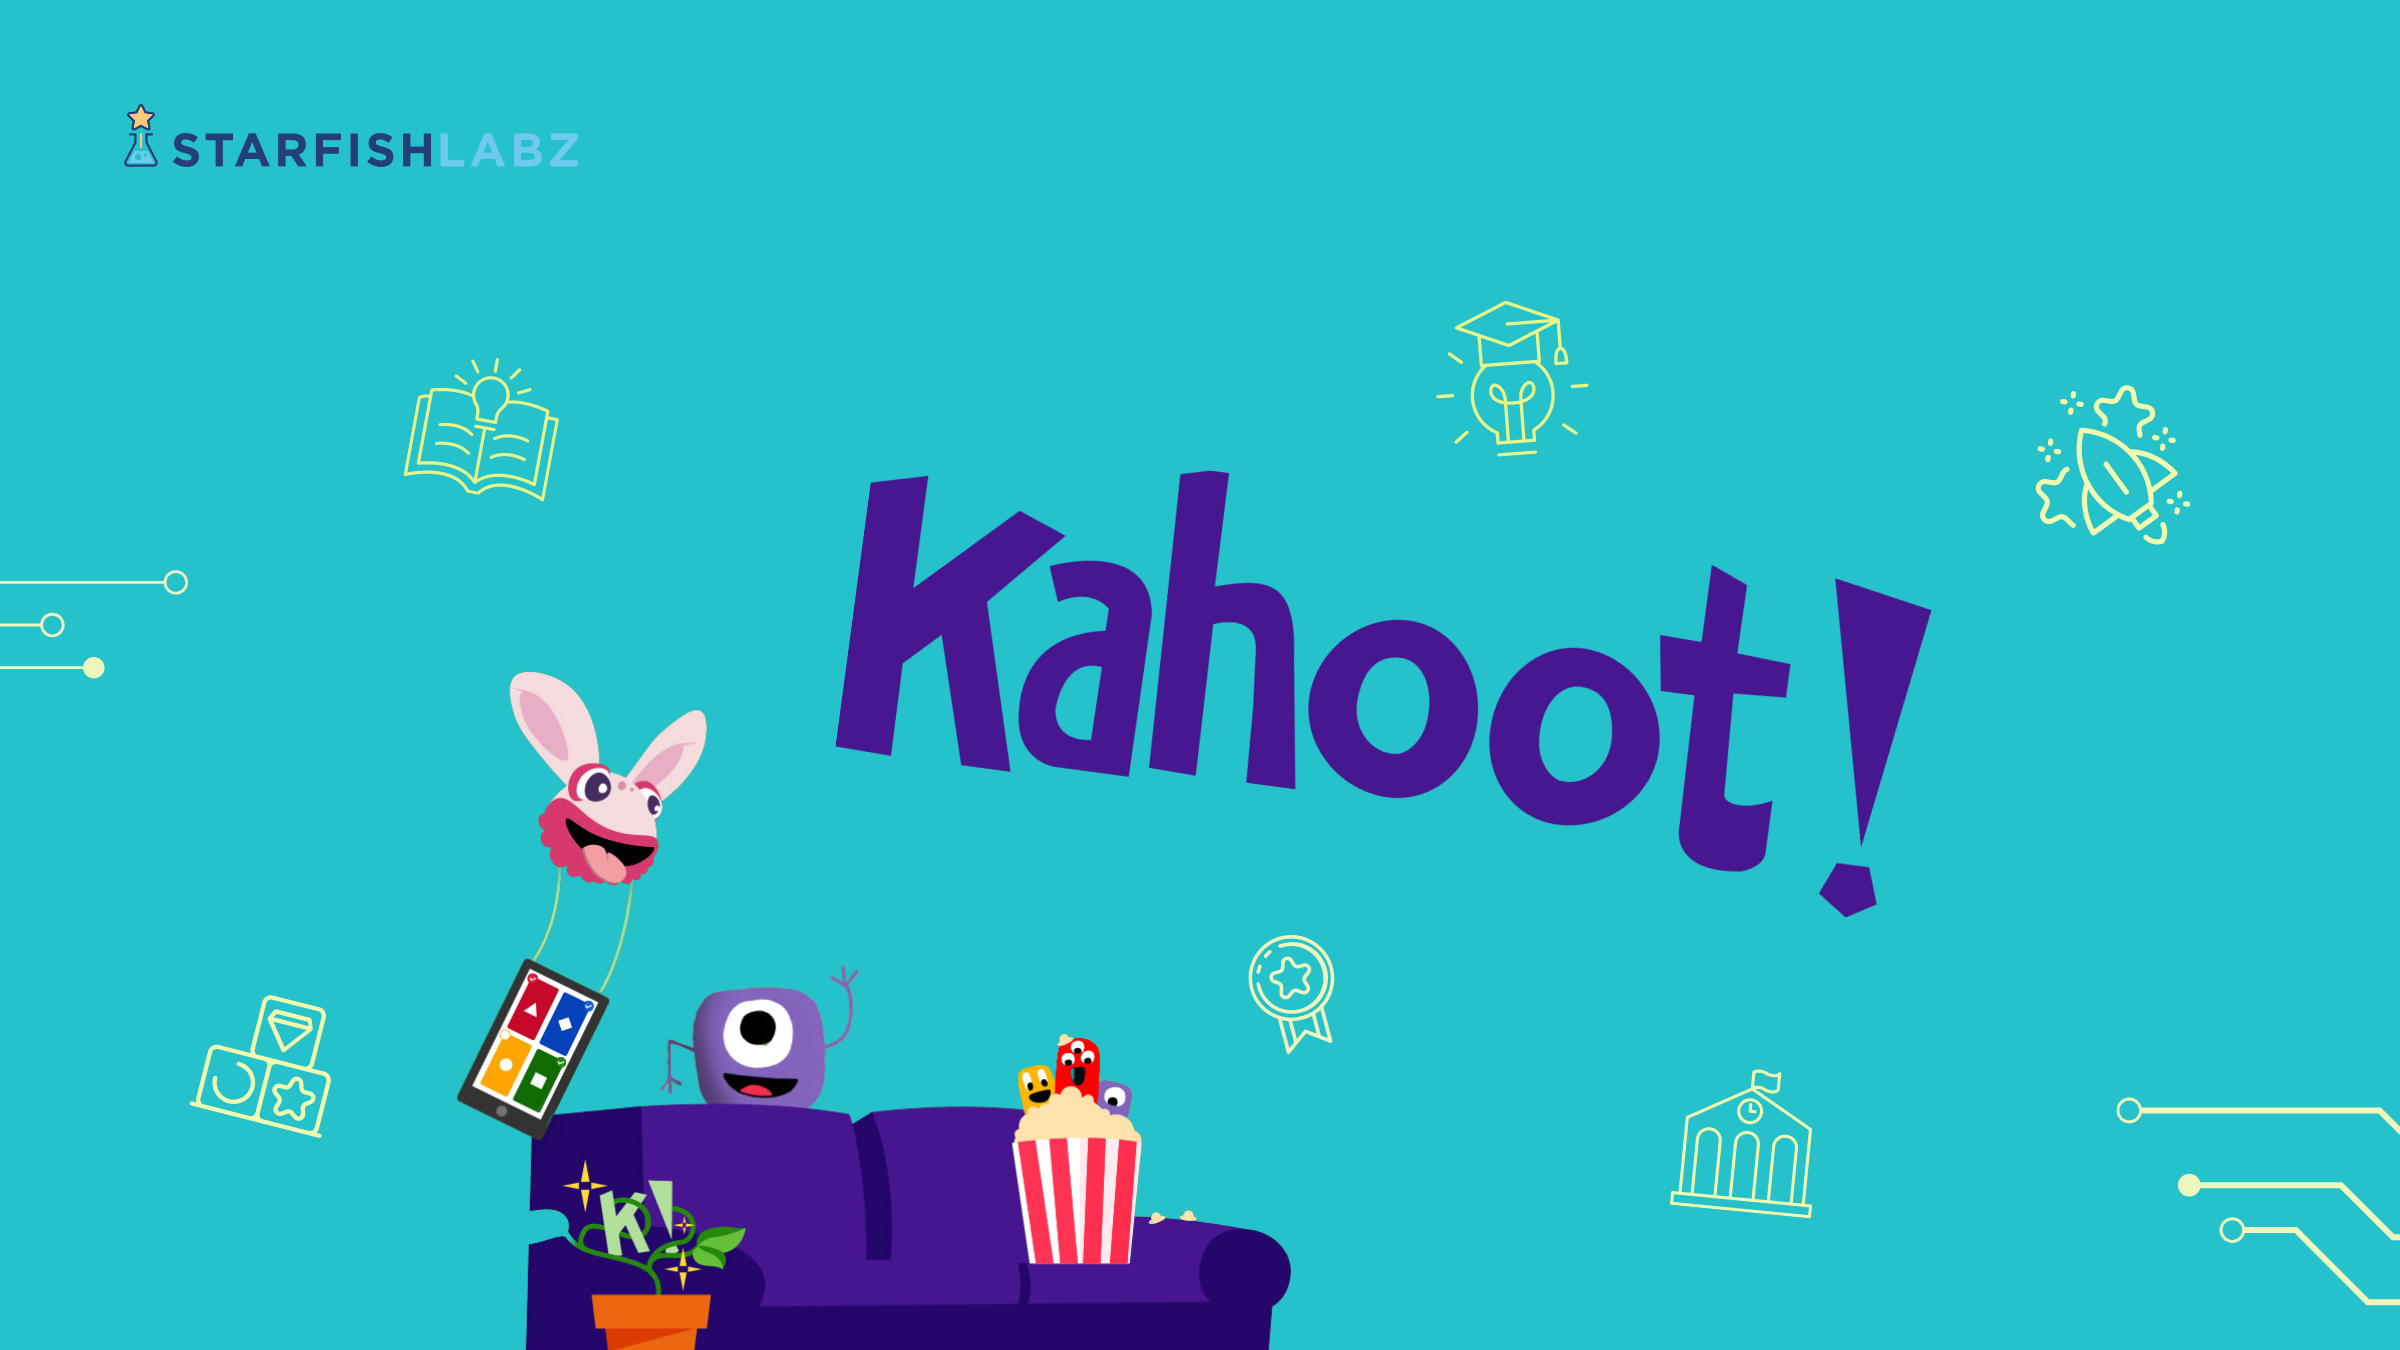 เปลี่ยนห้องเรียนธรรมดาสู่สนามแห่งการเรียนรู้ ทำความรู้จัก Kahoot! เทคโนโลยีการศึกษาแบบเกม